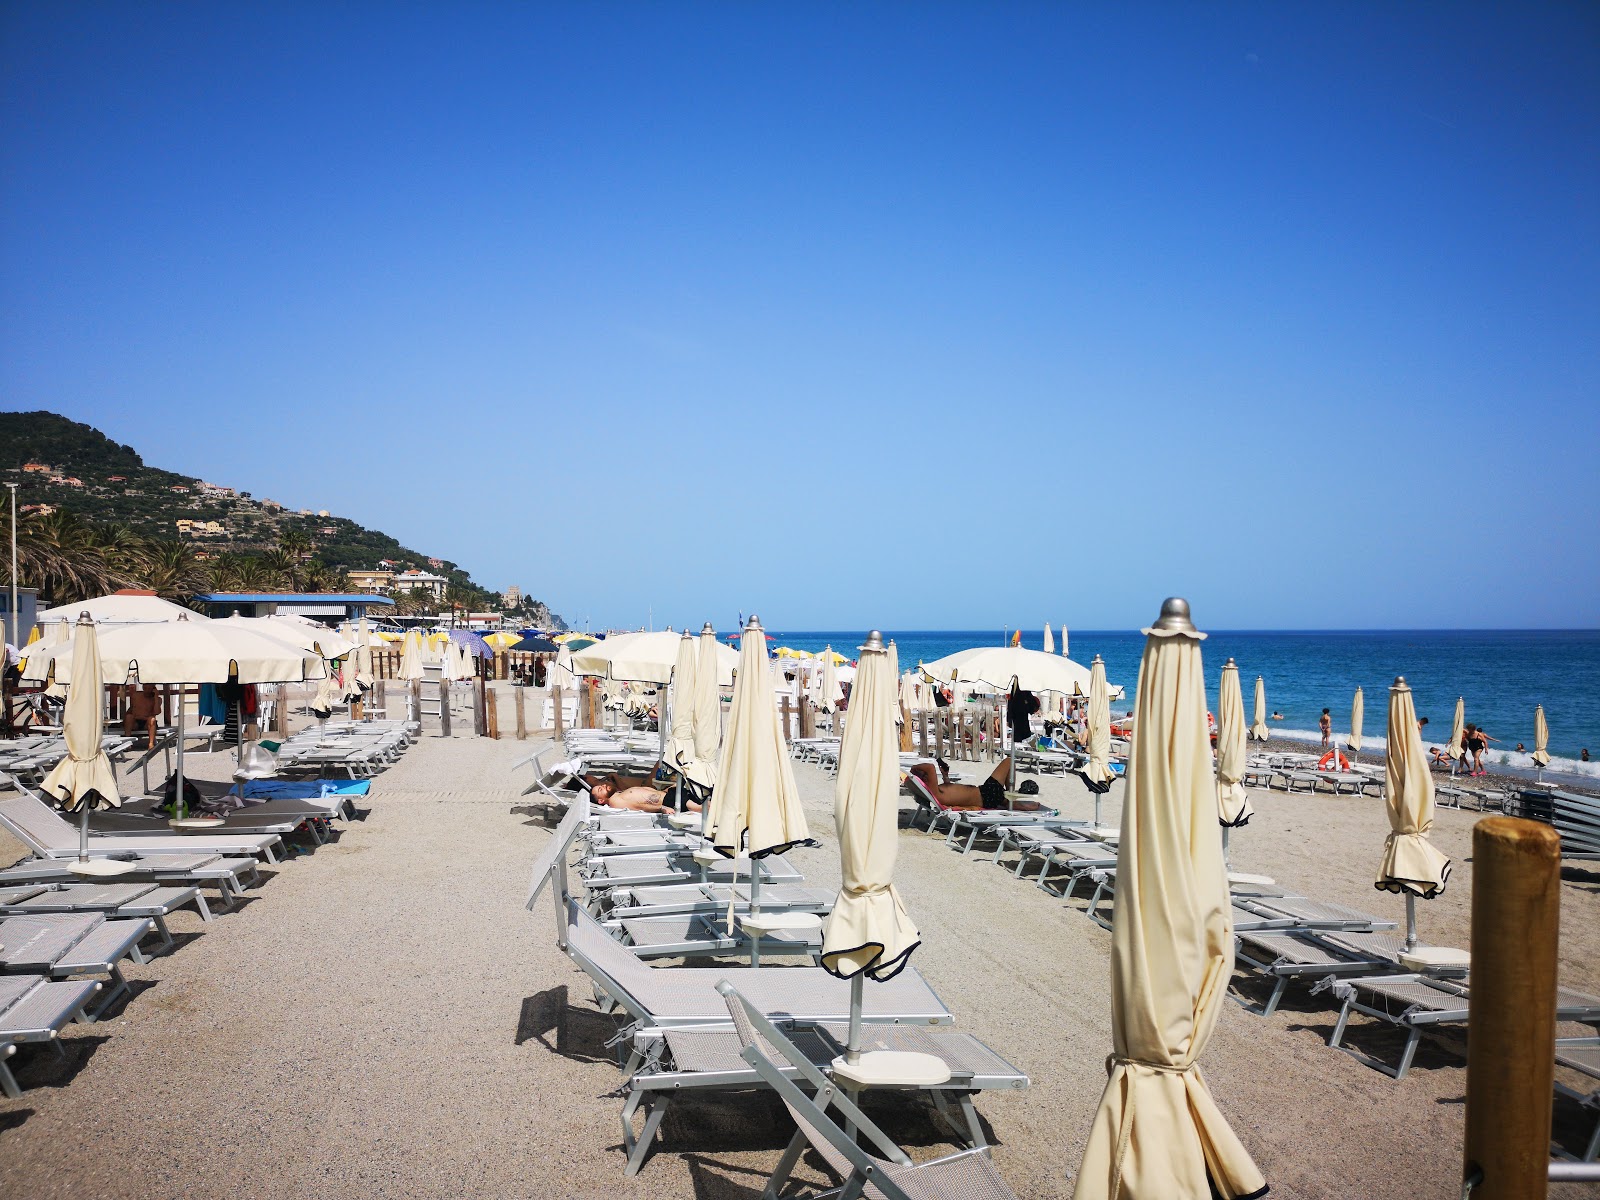 Foto af Spiaggia libera Attrezzata - populært sted blandt afslapningskendere